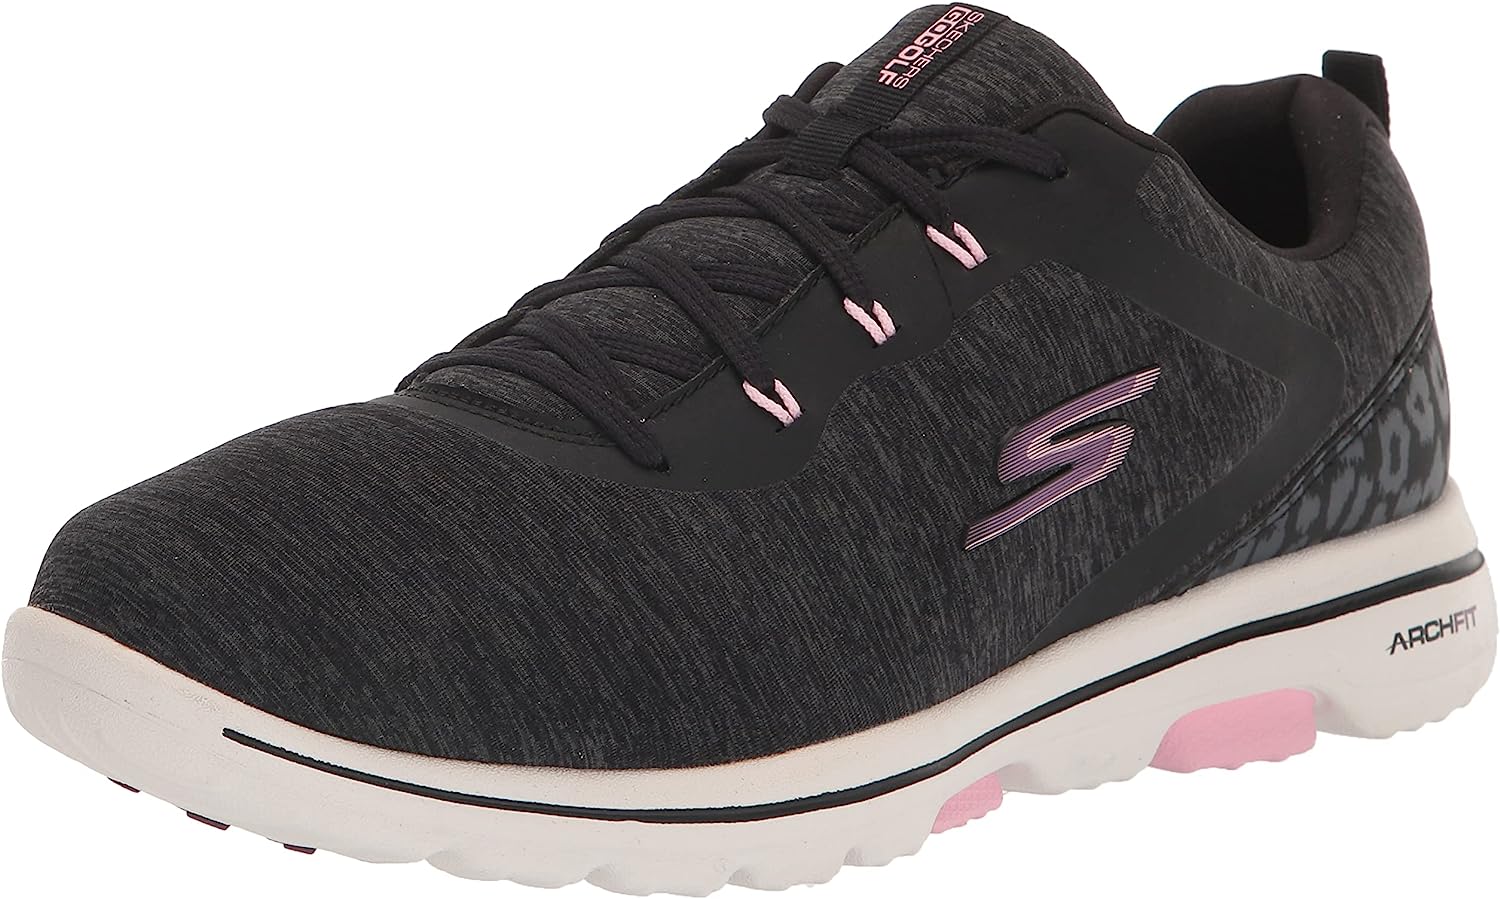 Skechers Women's Go Walk 5 Arch Fit Golf Shoe Sneaker